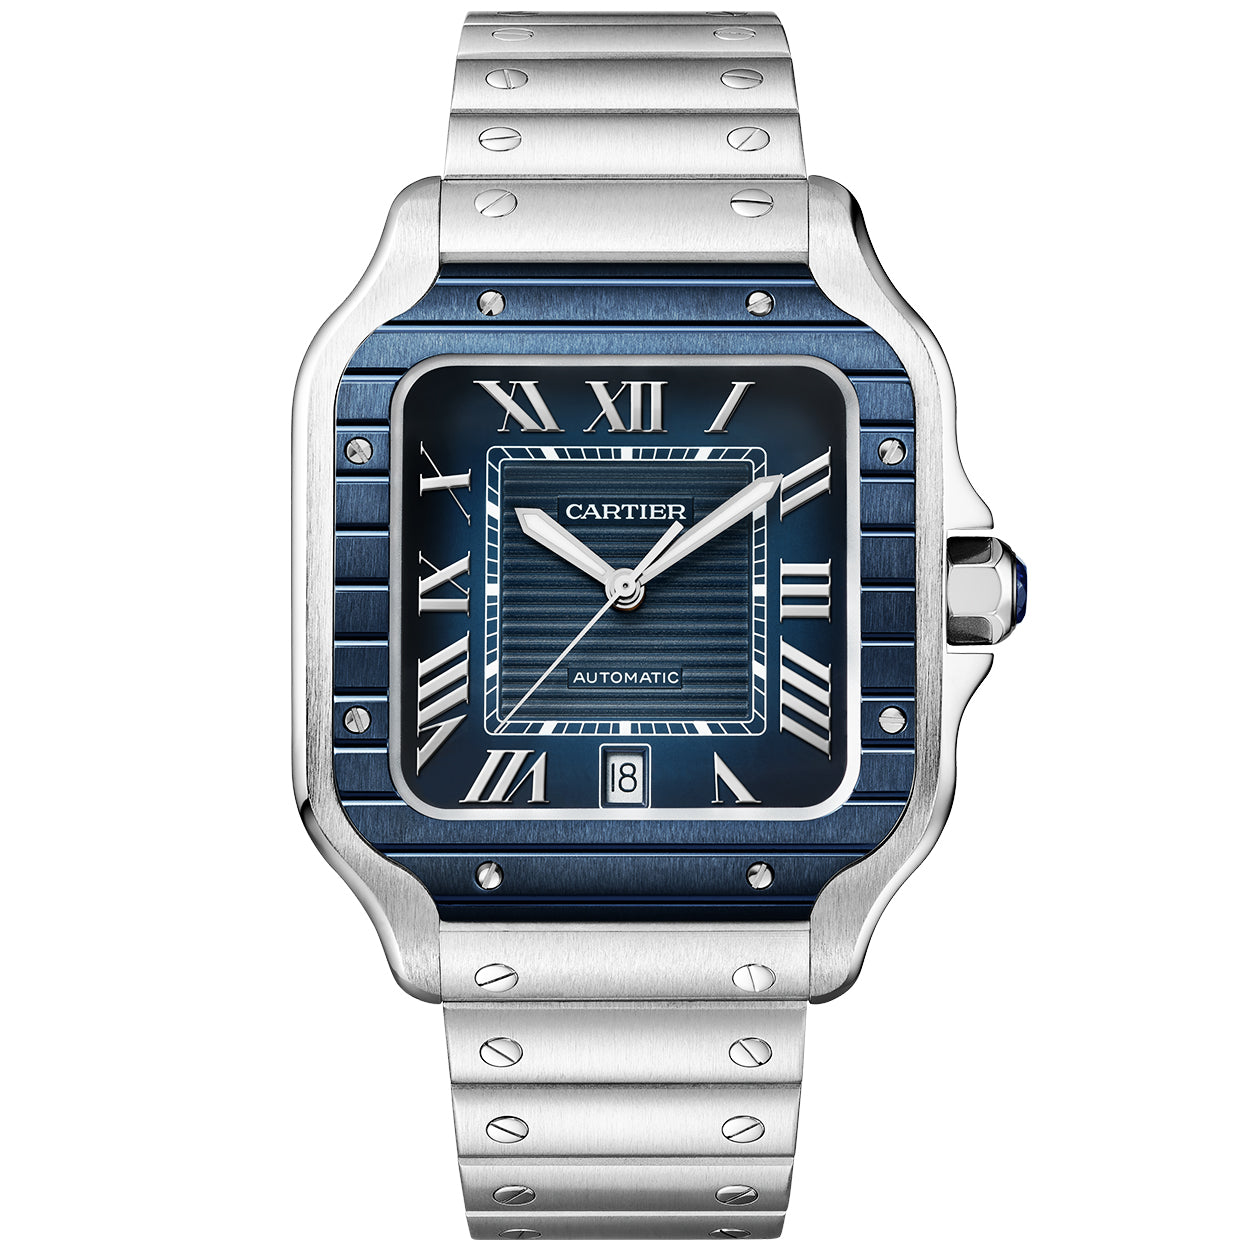 Santos de Cartier Large Steel & Blue PVD Dial Men's Automatic Watch